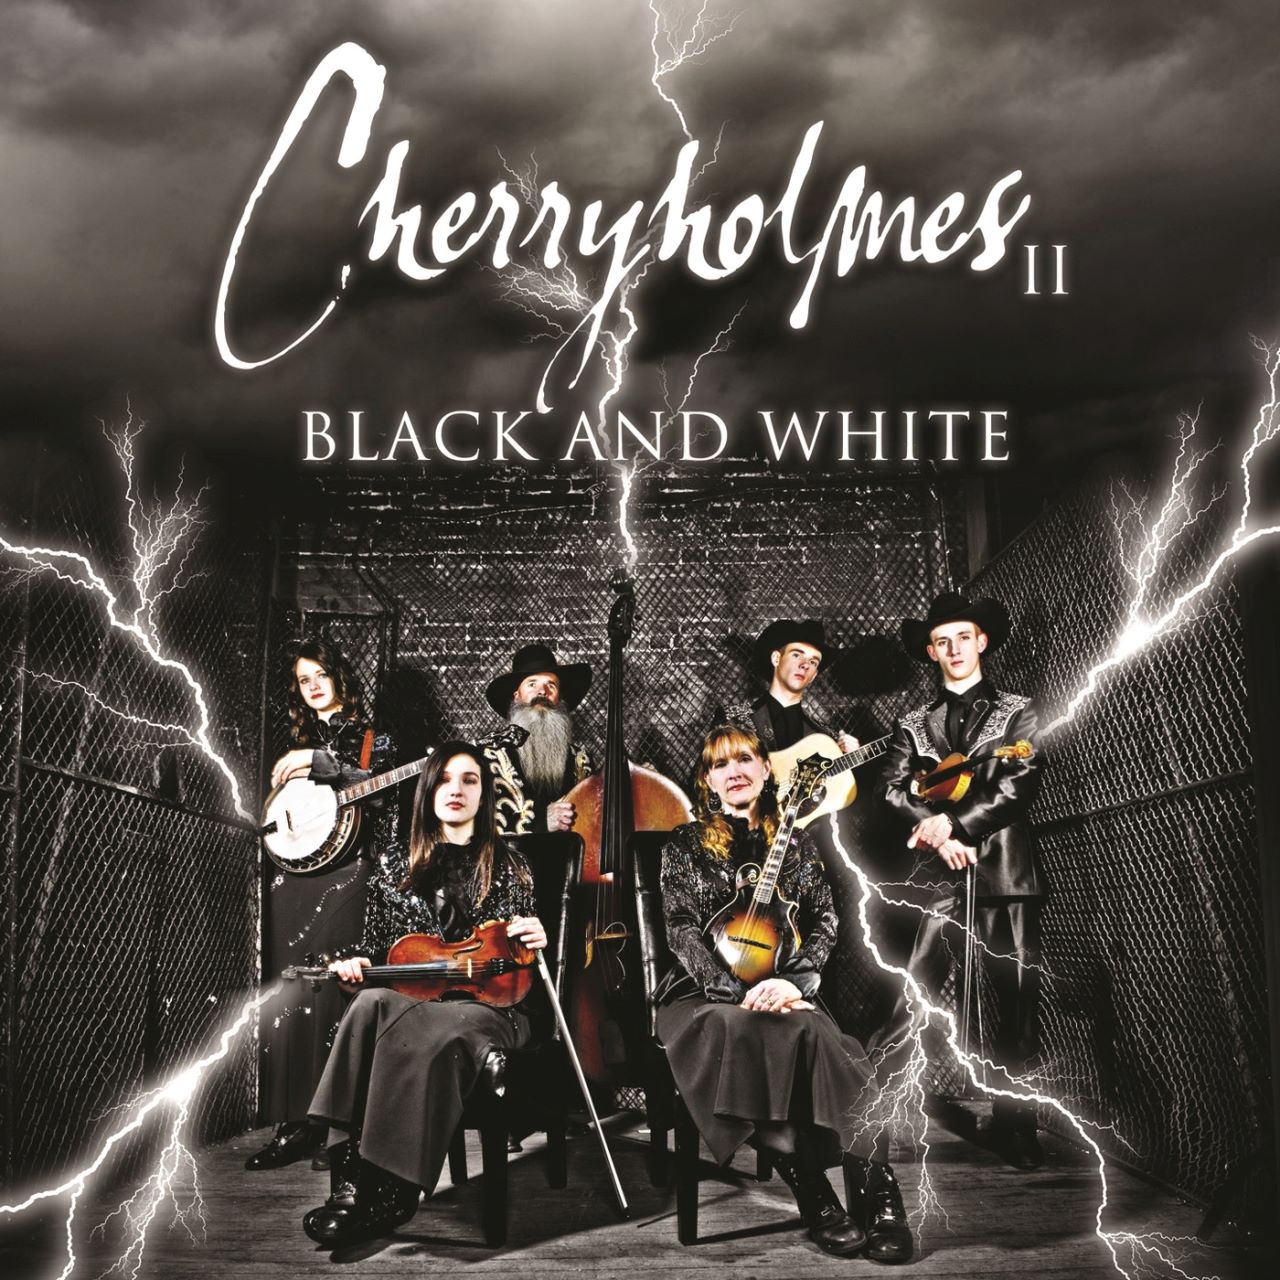 Cherryholmes - Cherryholmes II Black And White cover album